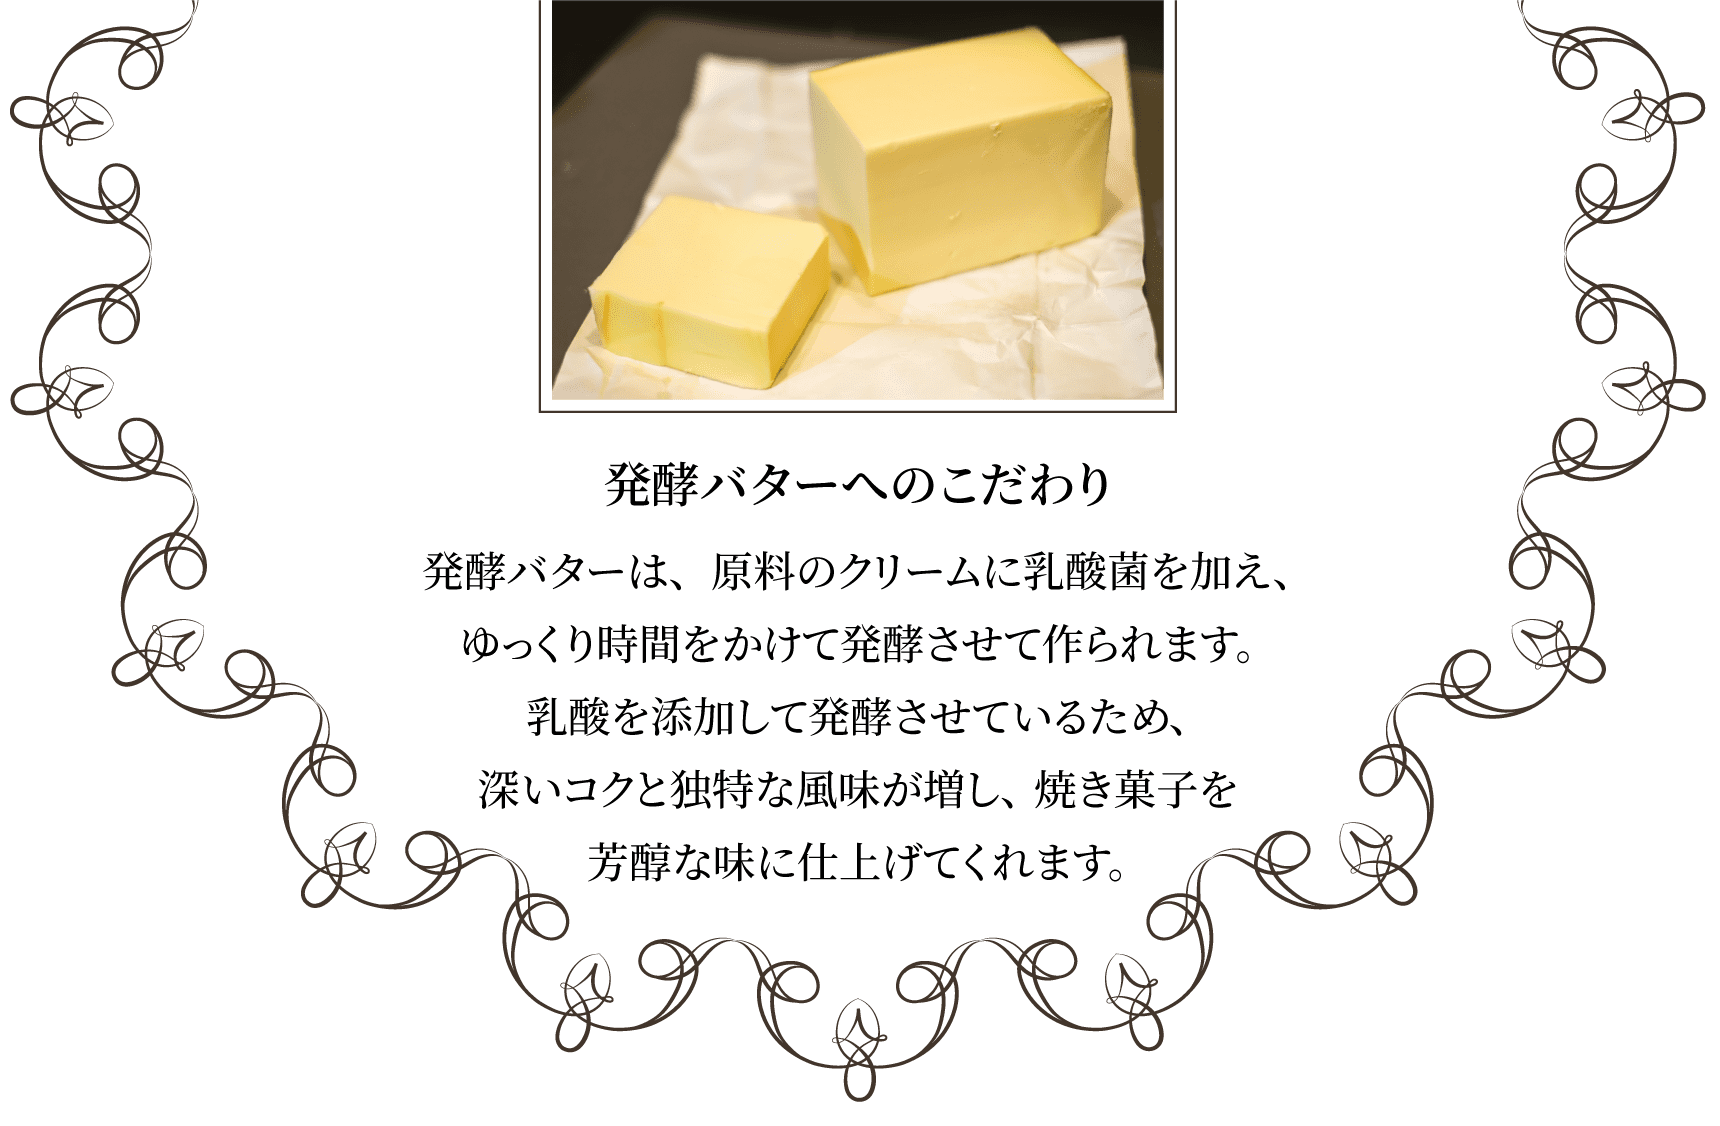 発酵バターへのこだわり発酵バターは、原料のクリームに乳酸菌を加え、ゆっくり時間をかけて発酵させて作られます。乳酸を添加して発酵させているため、深いコクと独特な風味が増し、焼き菓子を芳醇な味に仕上げてくれます。